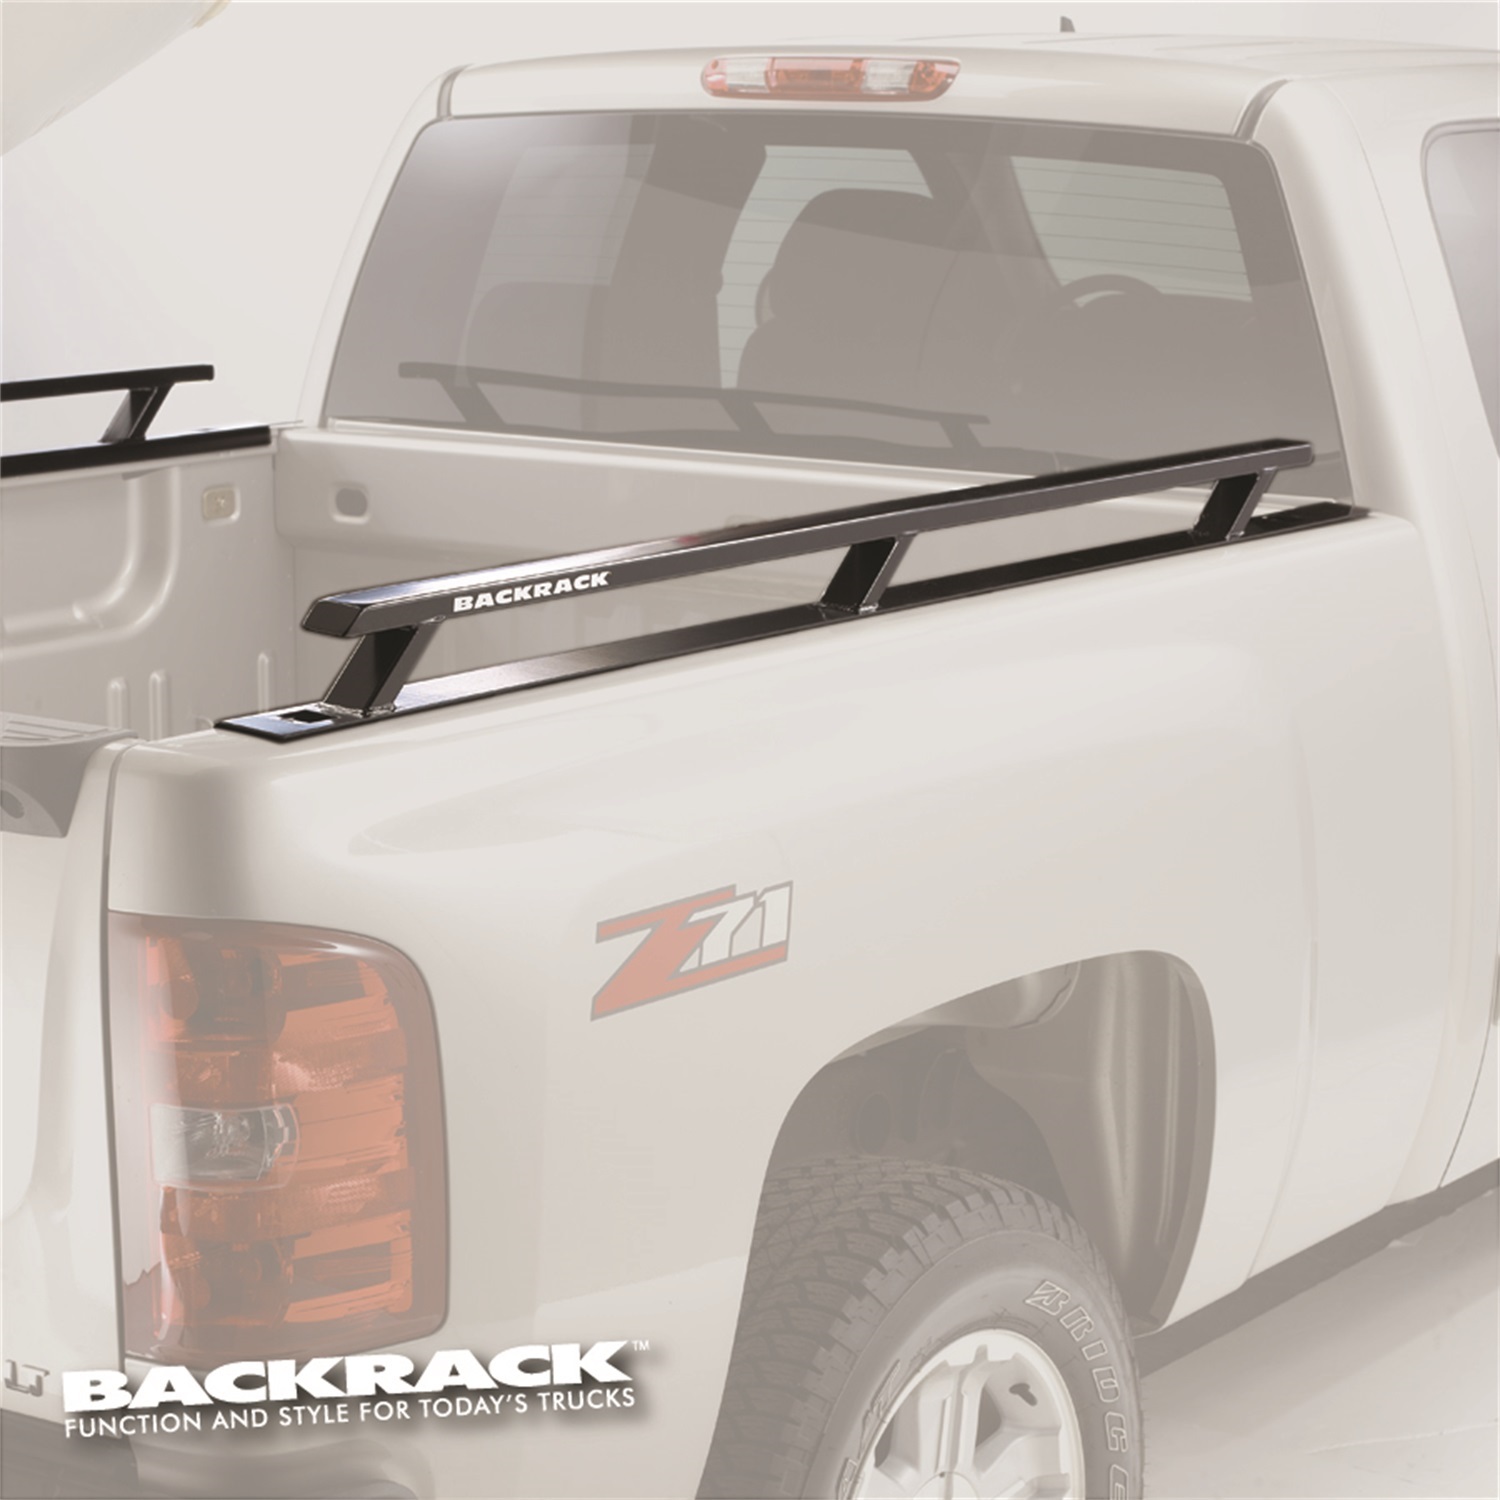 Backrack Backrack 65512 Side Rails Fits 04-14 F-150